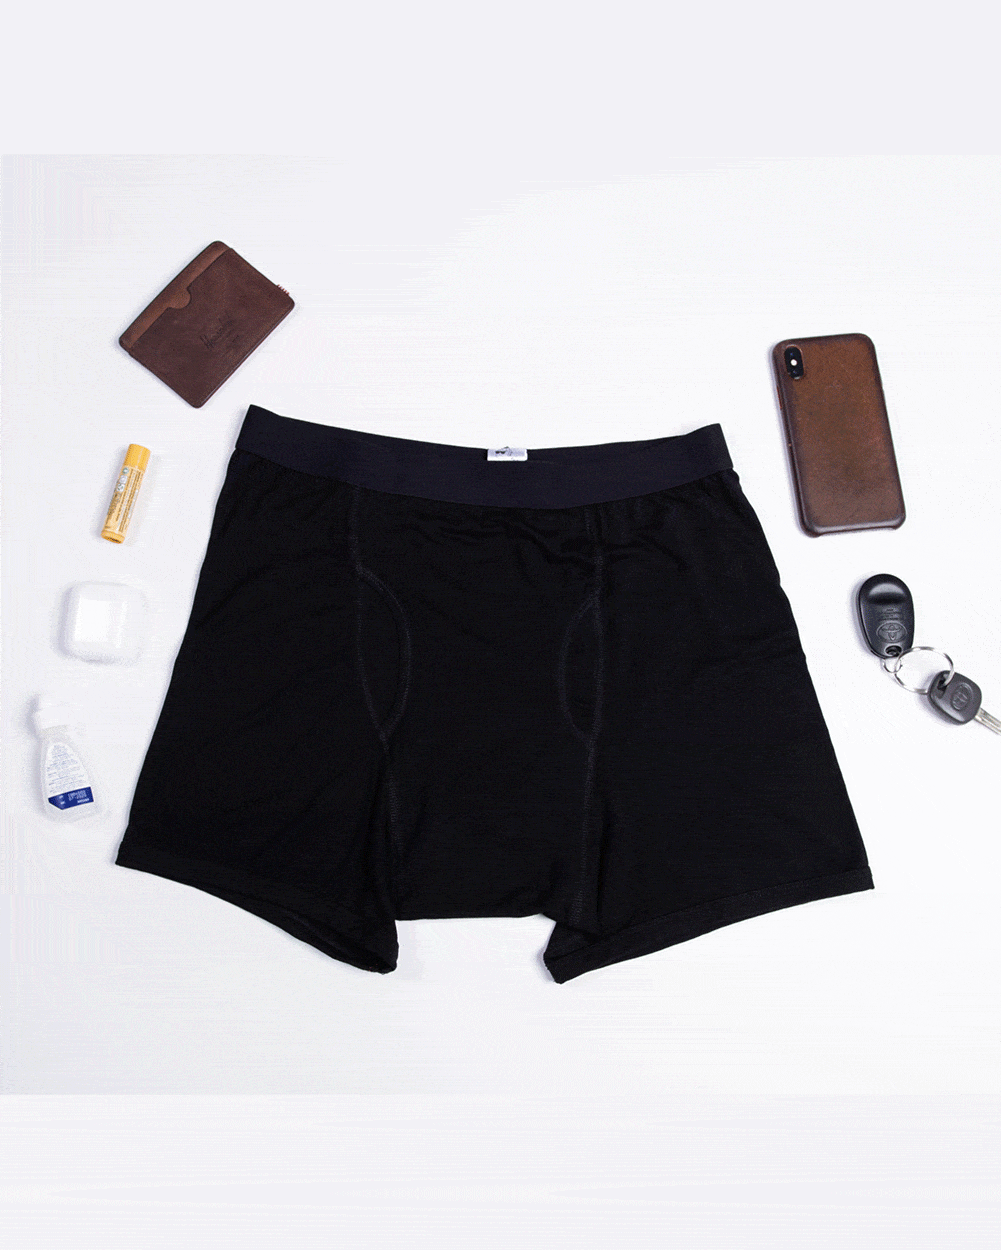 Speakeasy Briefs, Men's Stash Underwear with a Secret Front Pocket